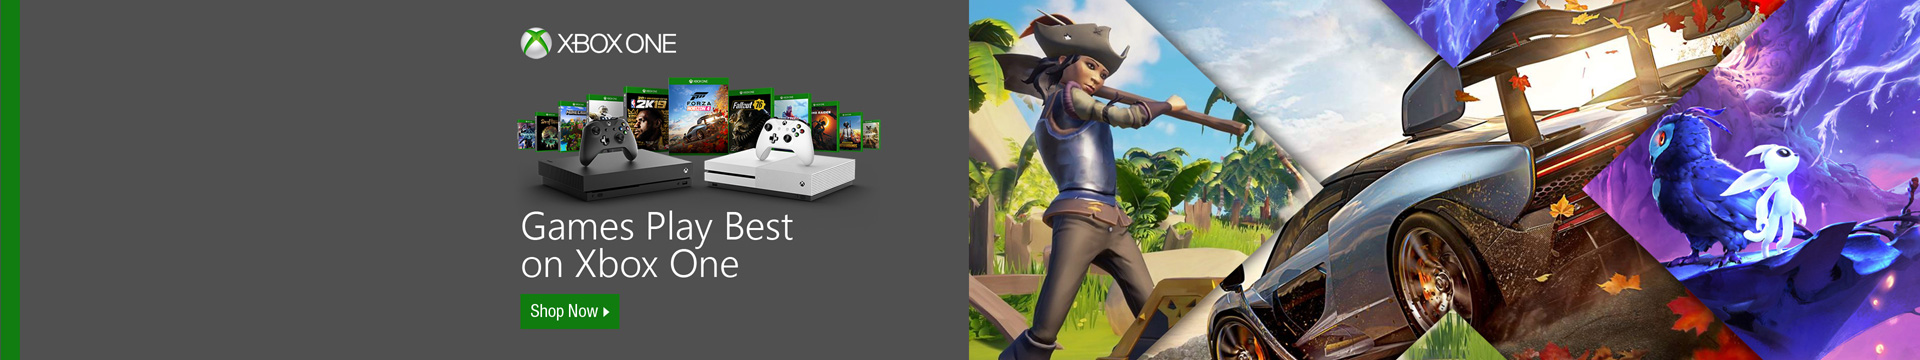 Xbox One Video Games Newegg Com